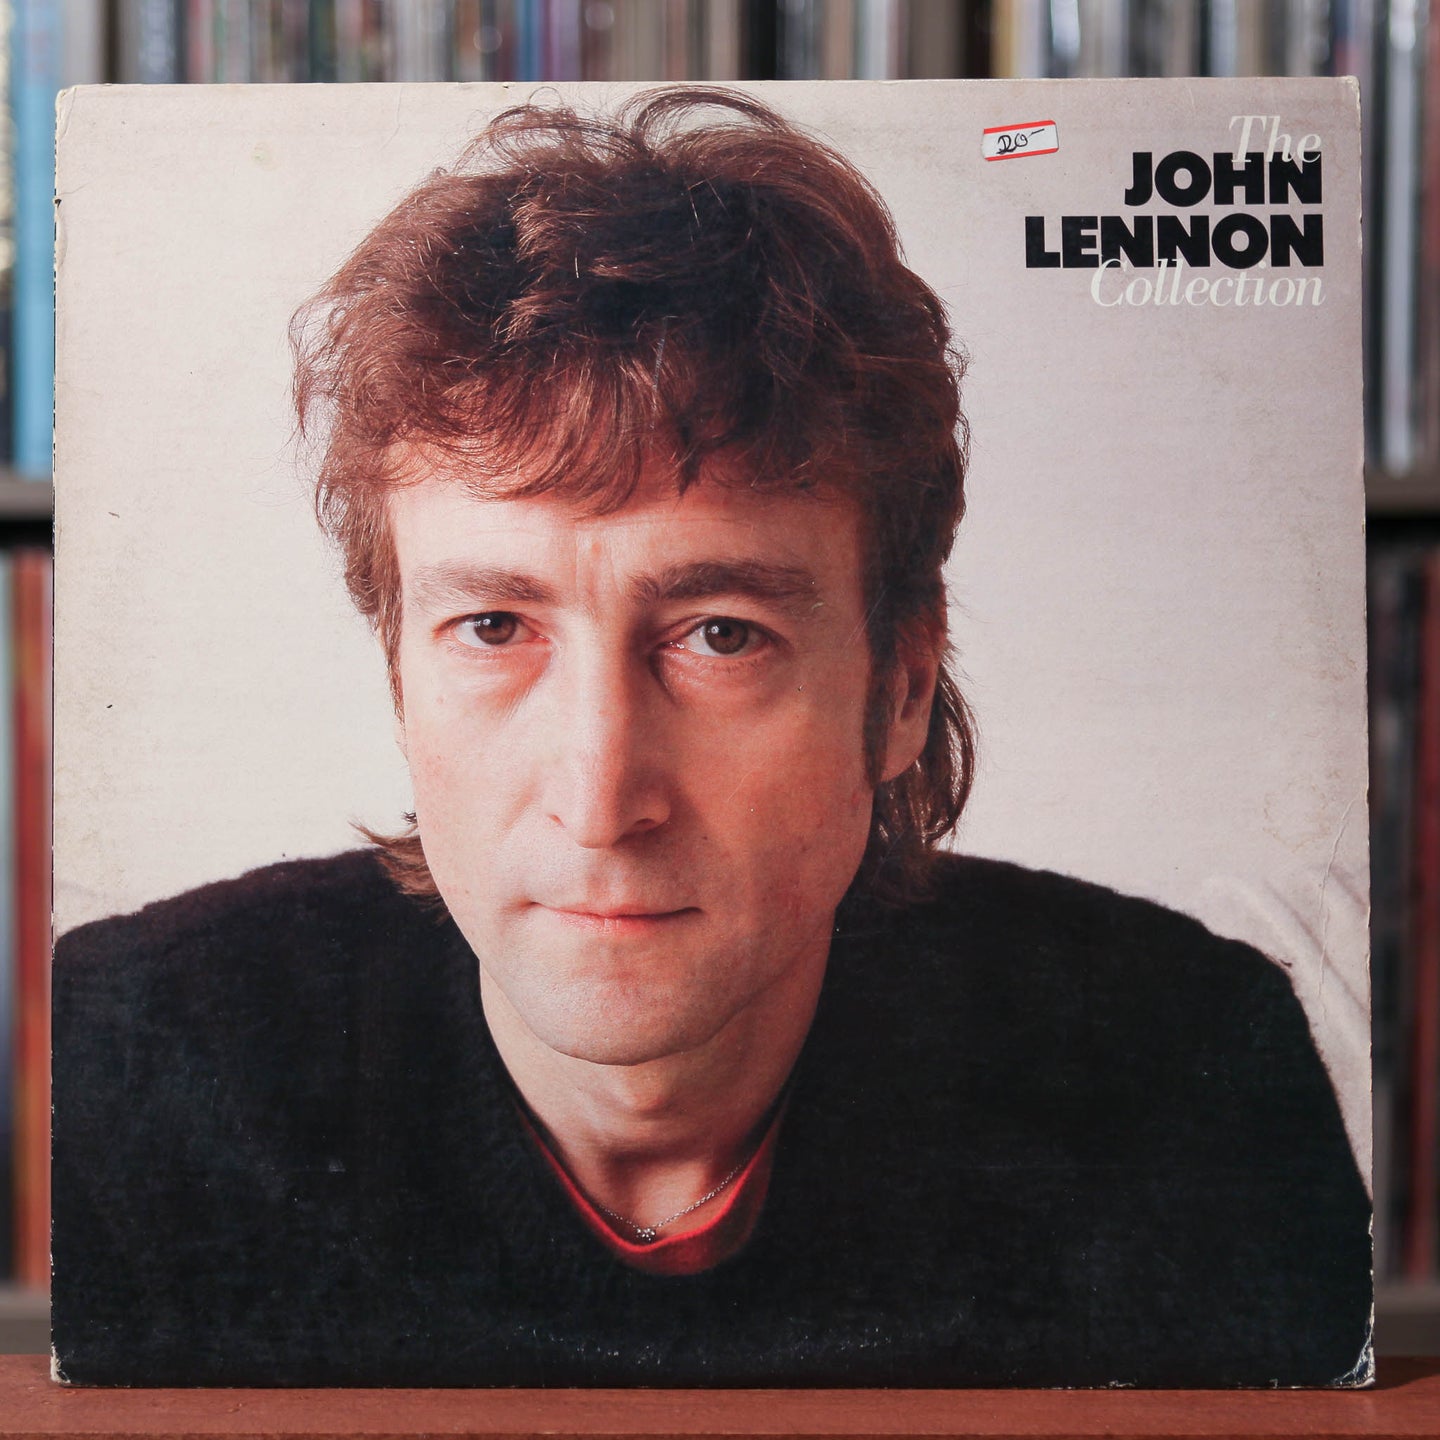 John Lennon - The John Lennon Collection - 1980 Geffen, VG/VG+